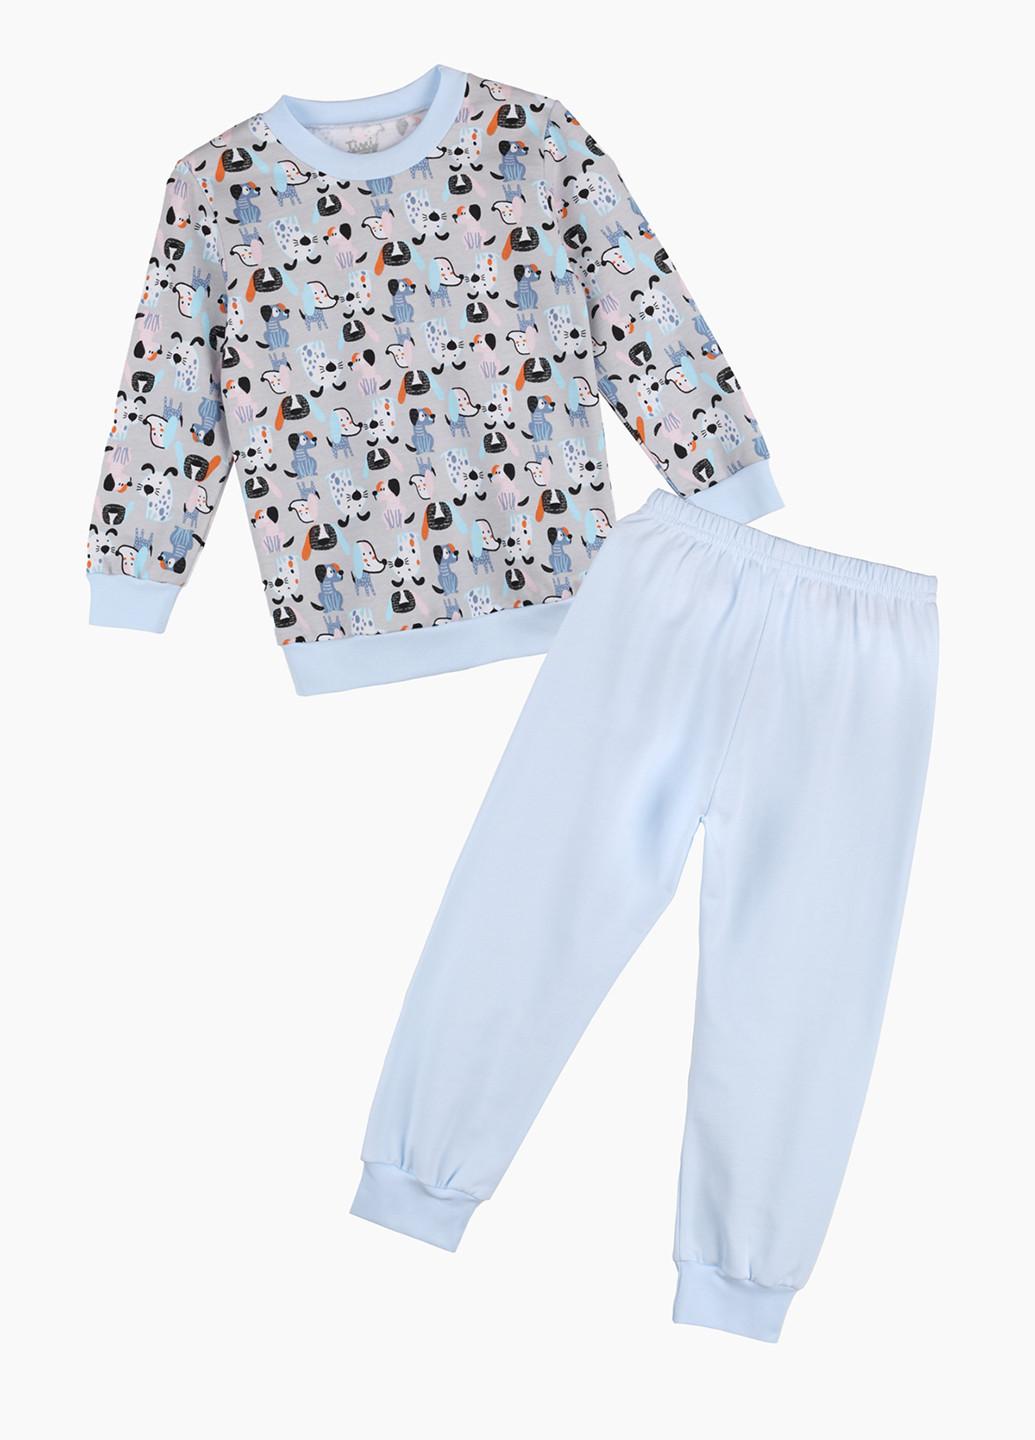 Голубая всесезон пижама (свитшот, брюки) свитшот + брюки Timi